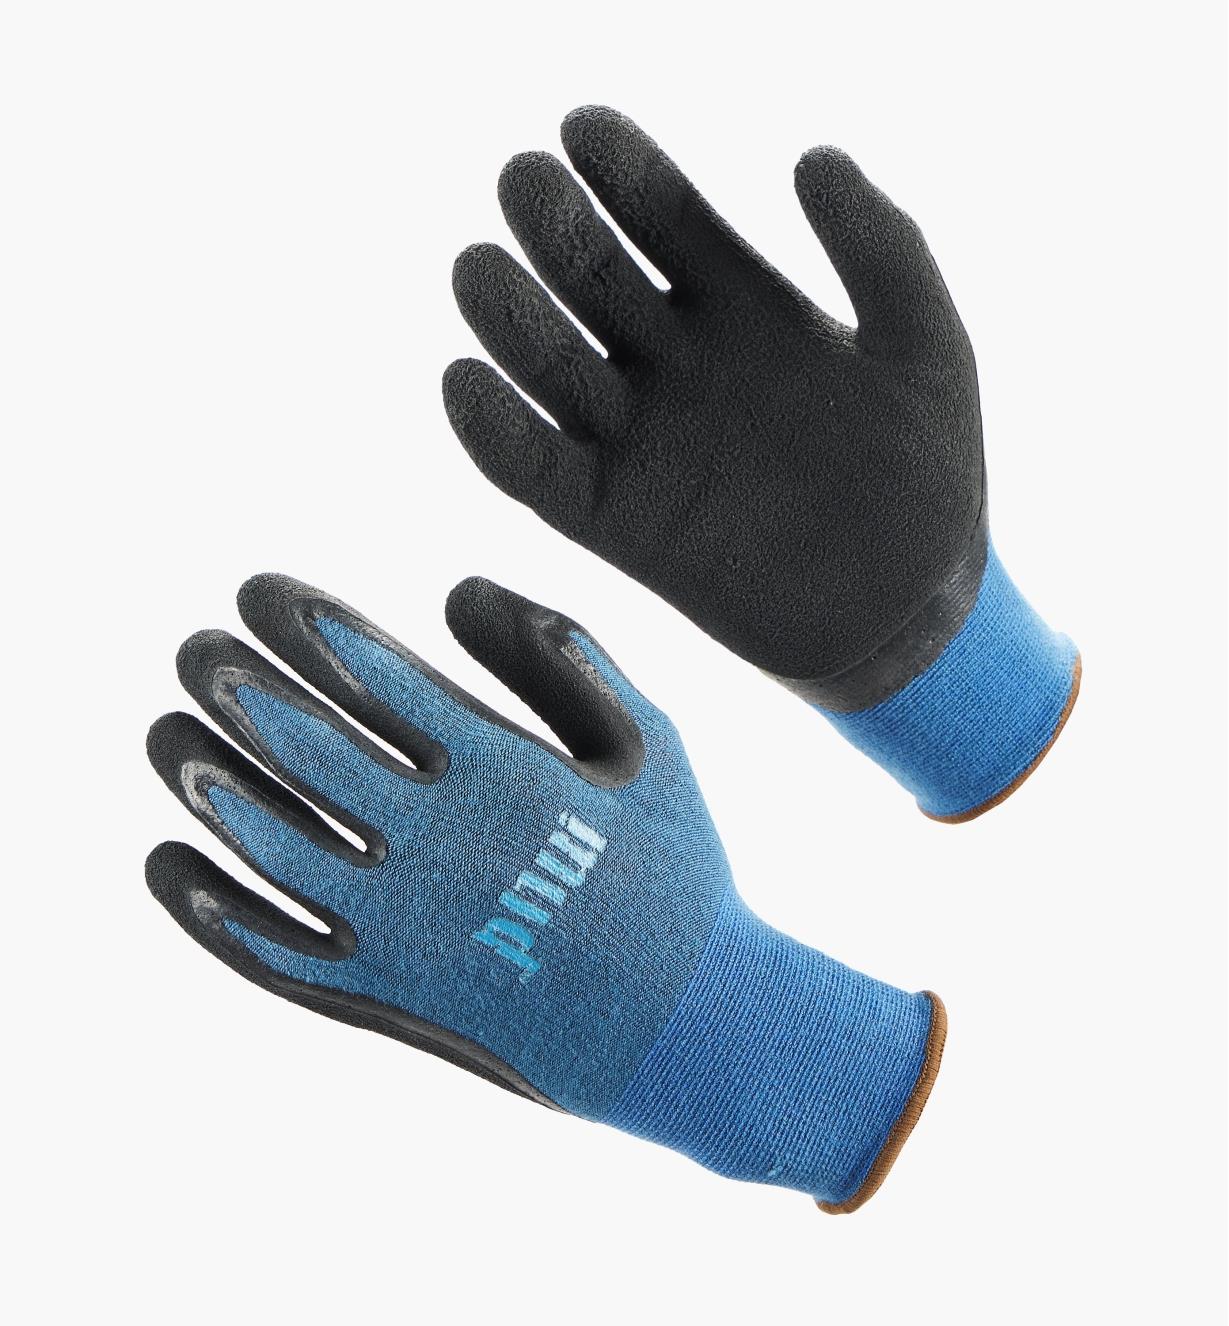 AH195 - Mud Gloves, S-M (size 7-8)